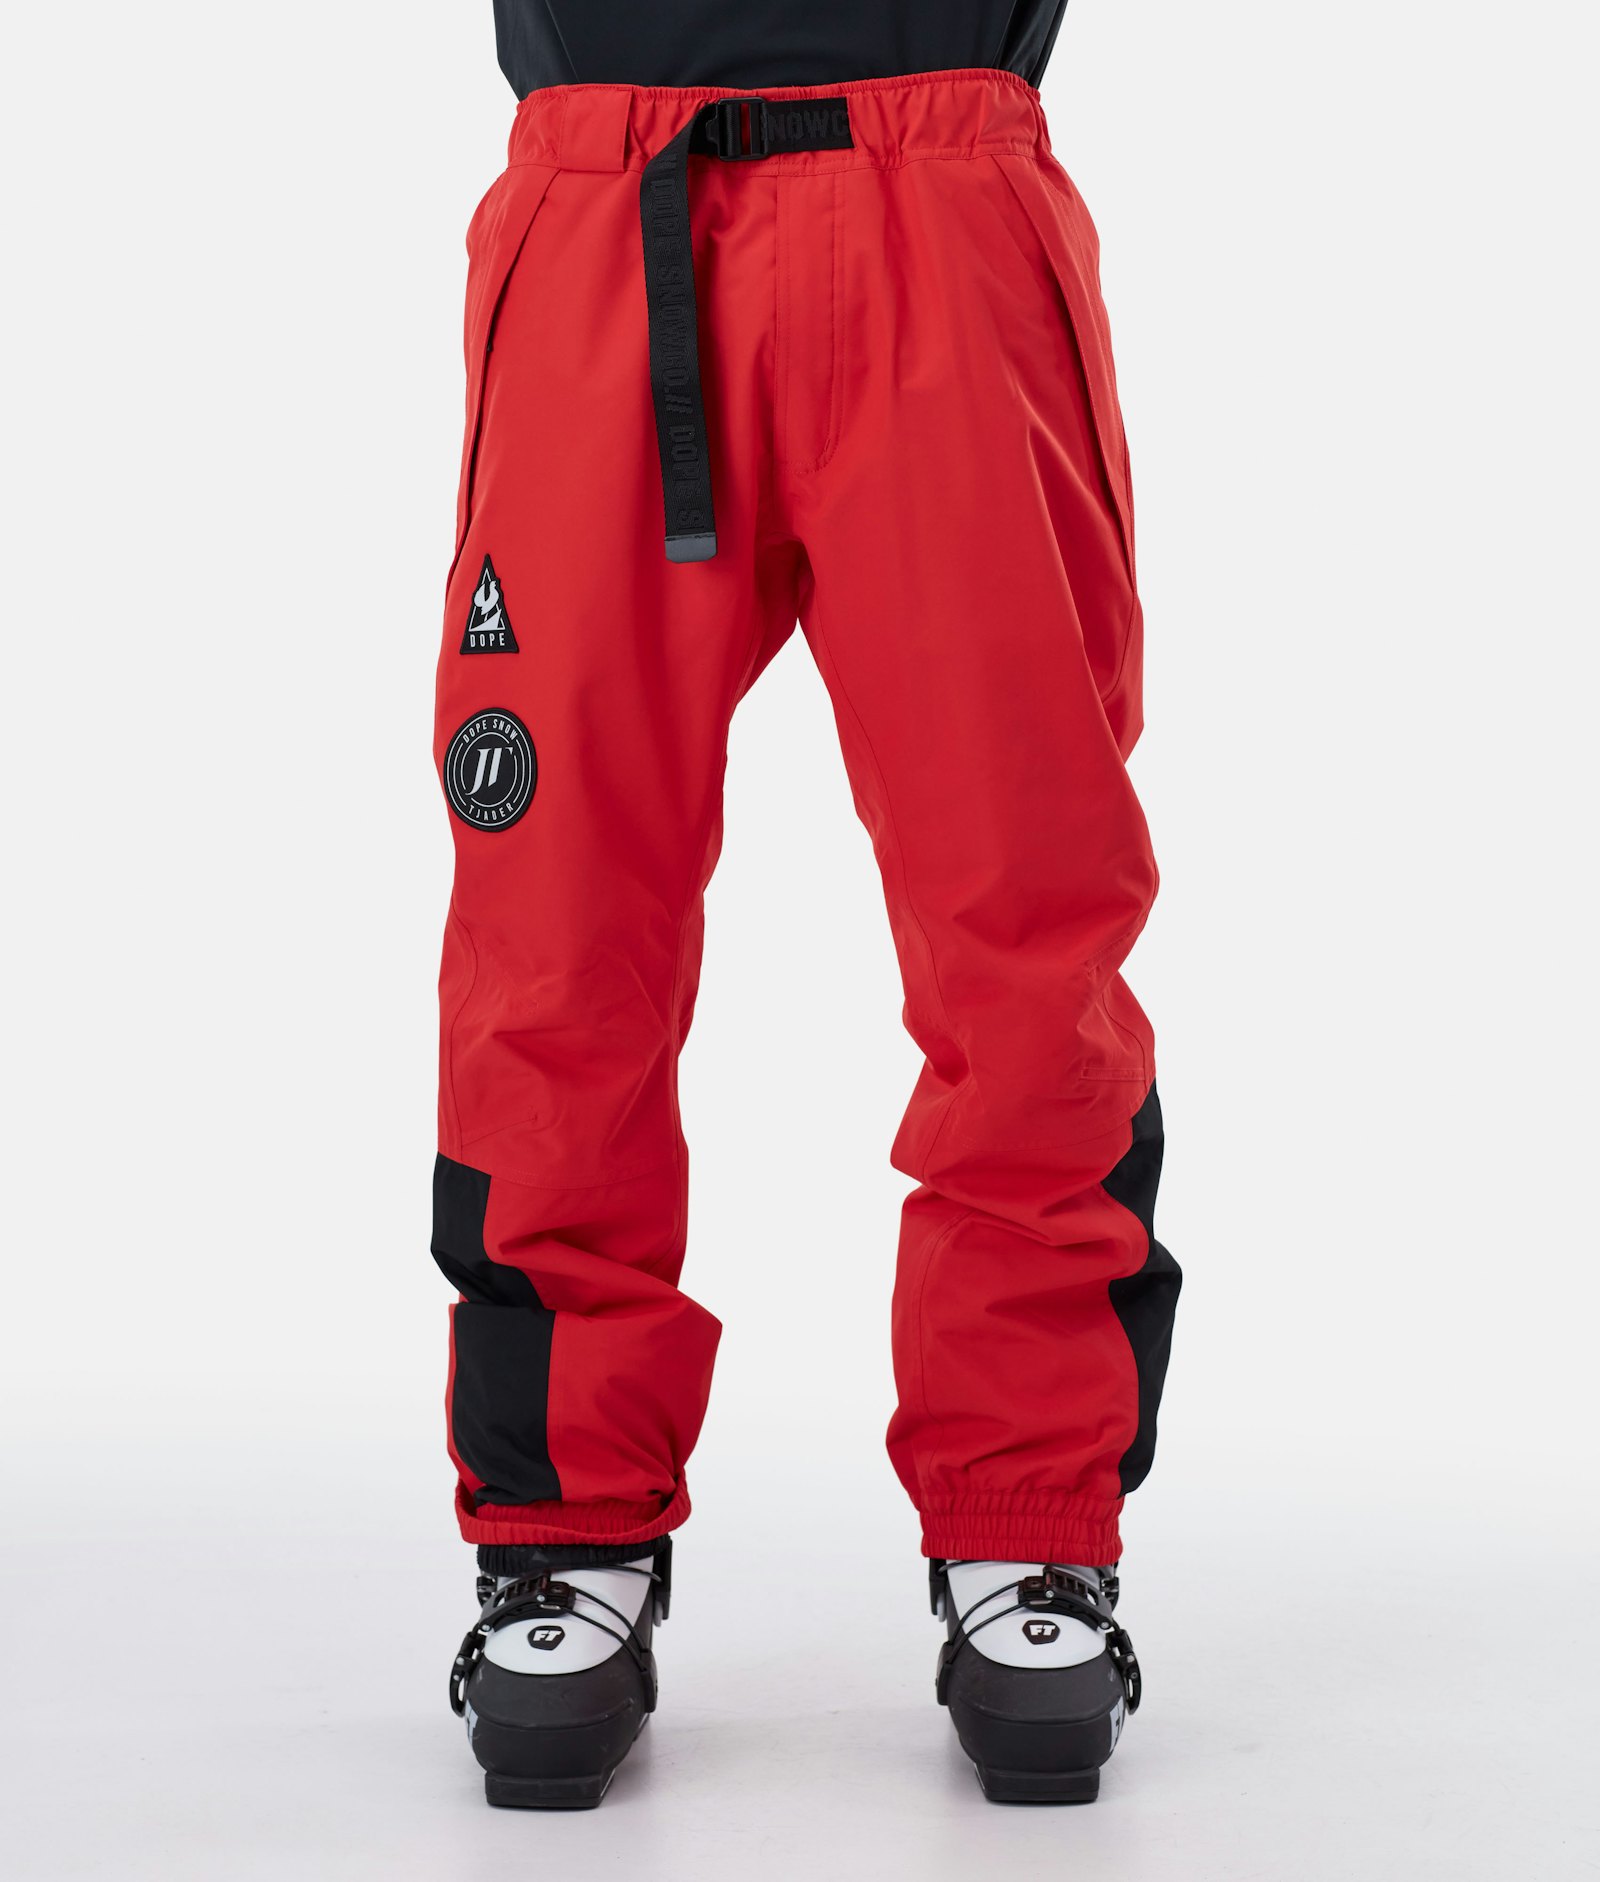 JT Blizzard 2020 Pantalones Esquí Hombre Red